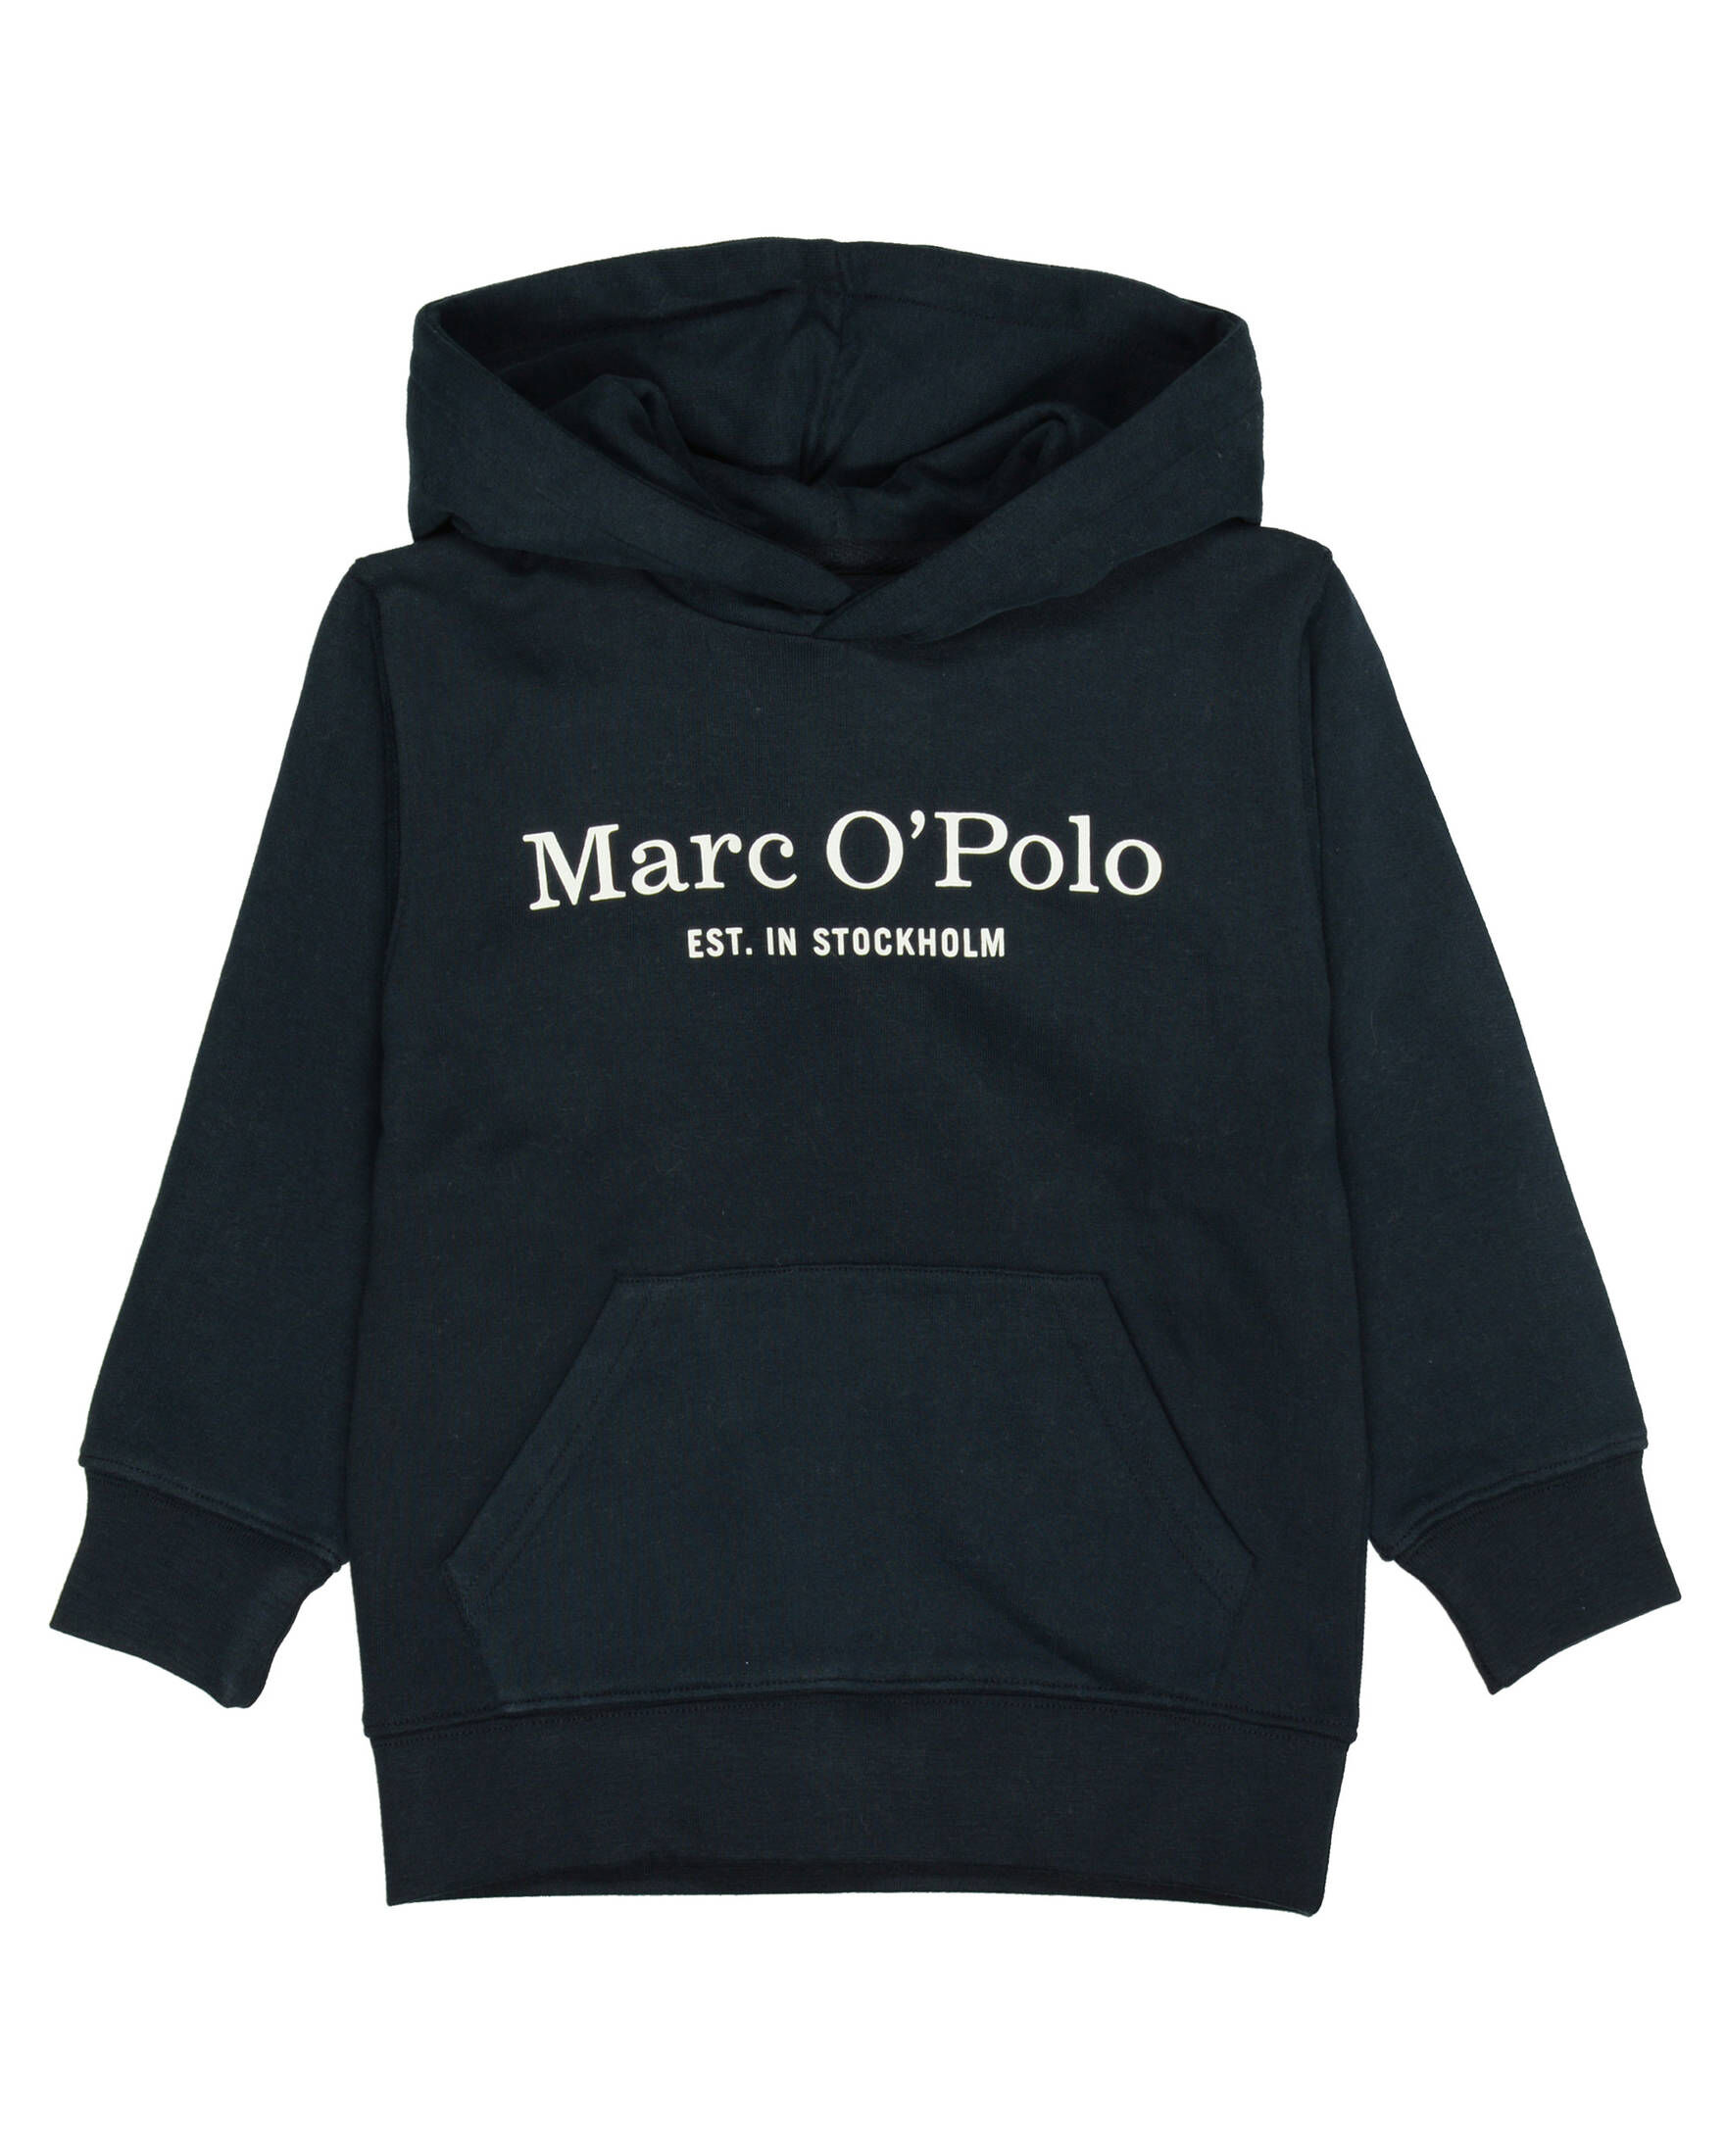 Kinder NEU Marc O'Polo Sweatshirt mit Kapuze Jungen Kinder